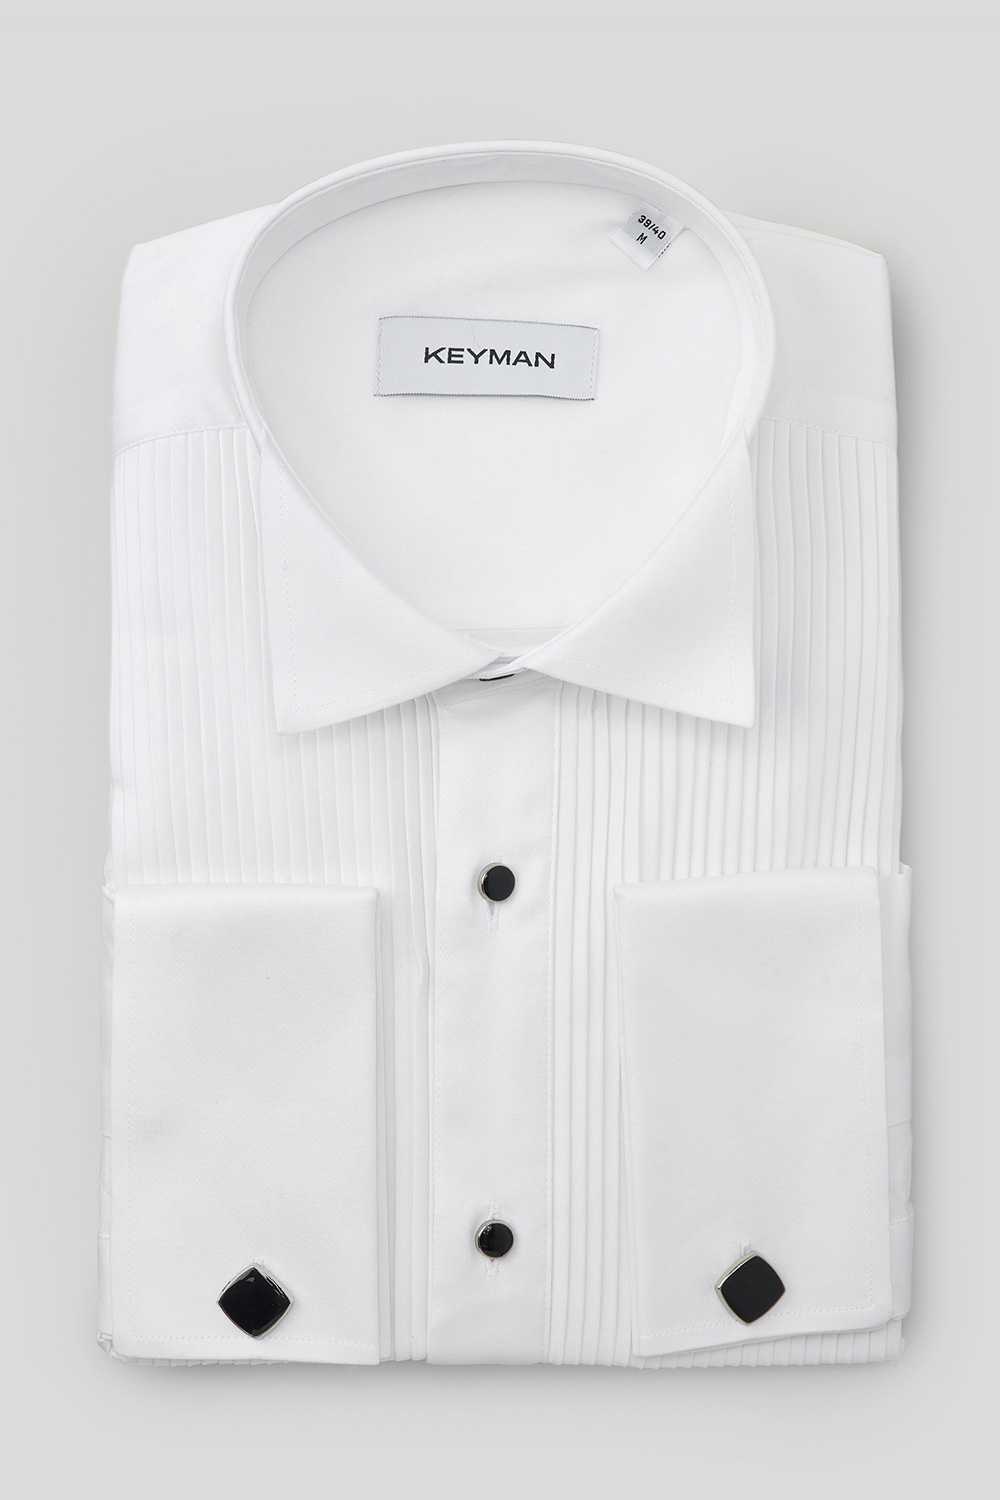 Рубашка мужская белая под смокинг c эластаном, черные пуговицы, широкое плиссе, под бабочку